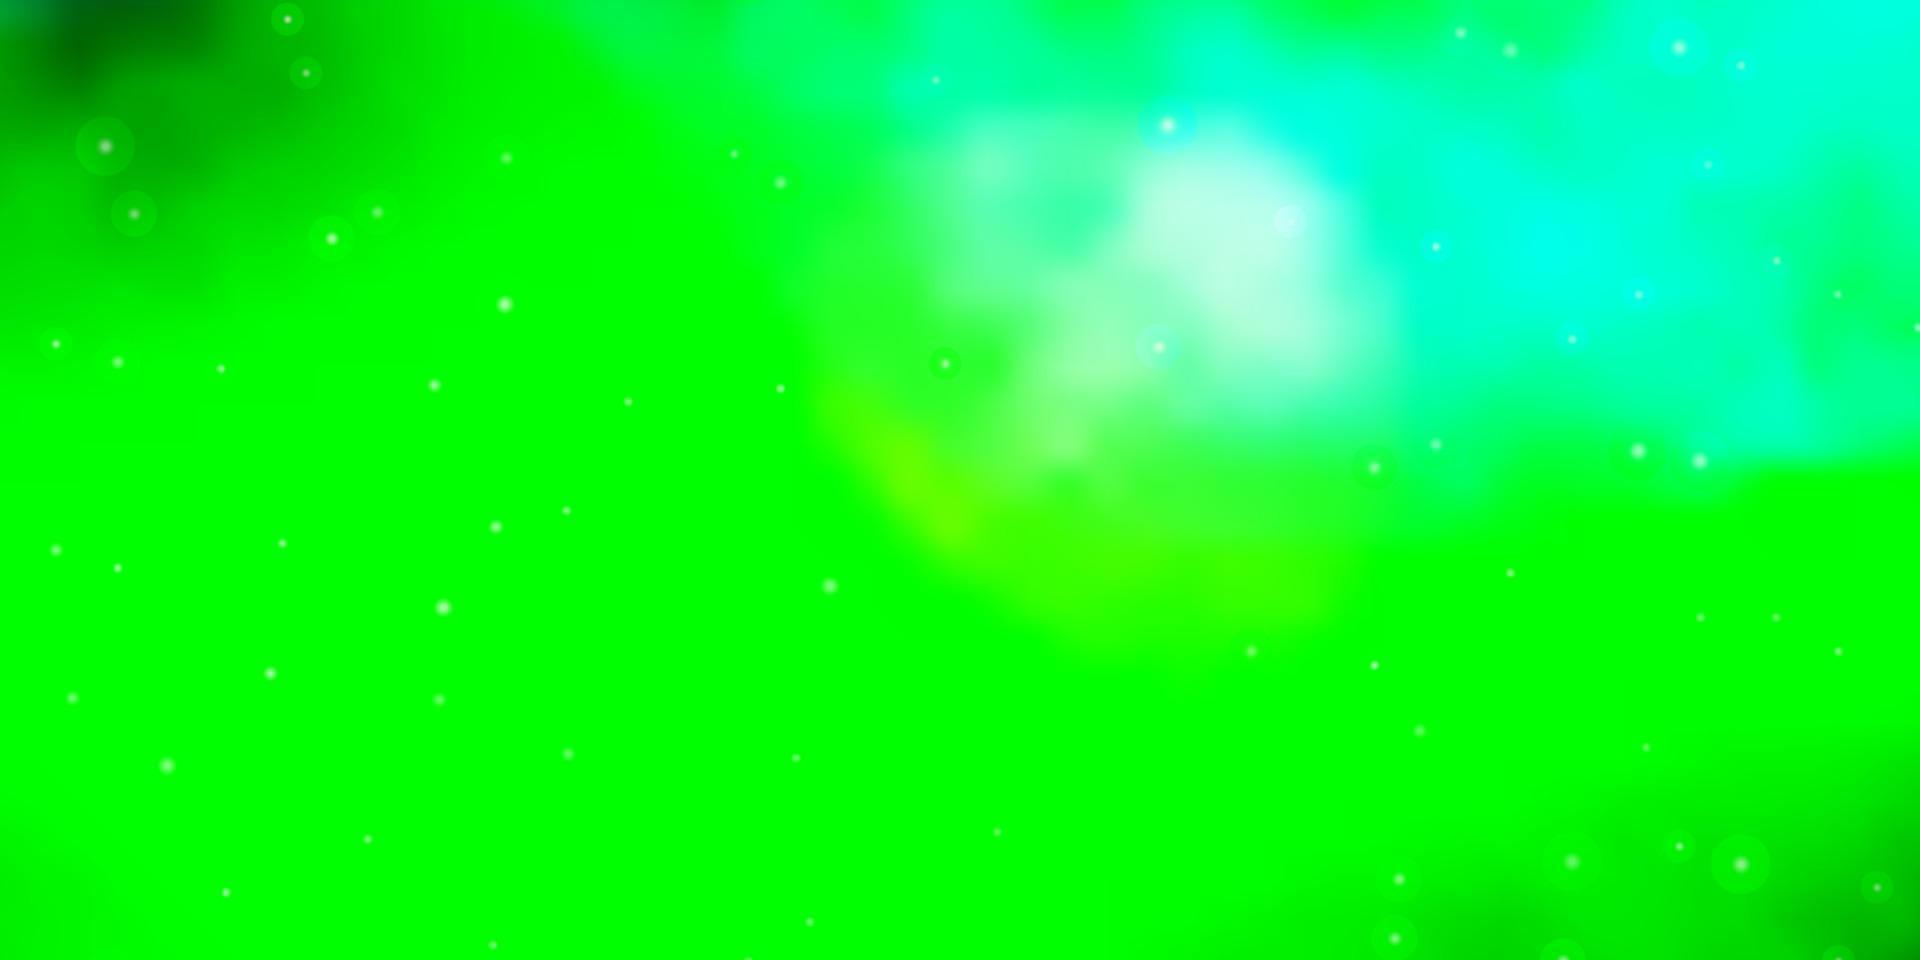 ljusblå, grön vektorstruktur med vackra stjärnor. vektor